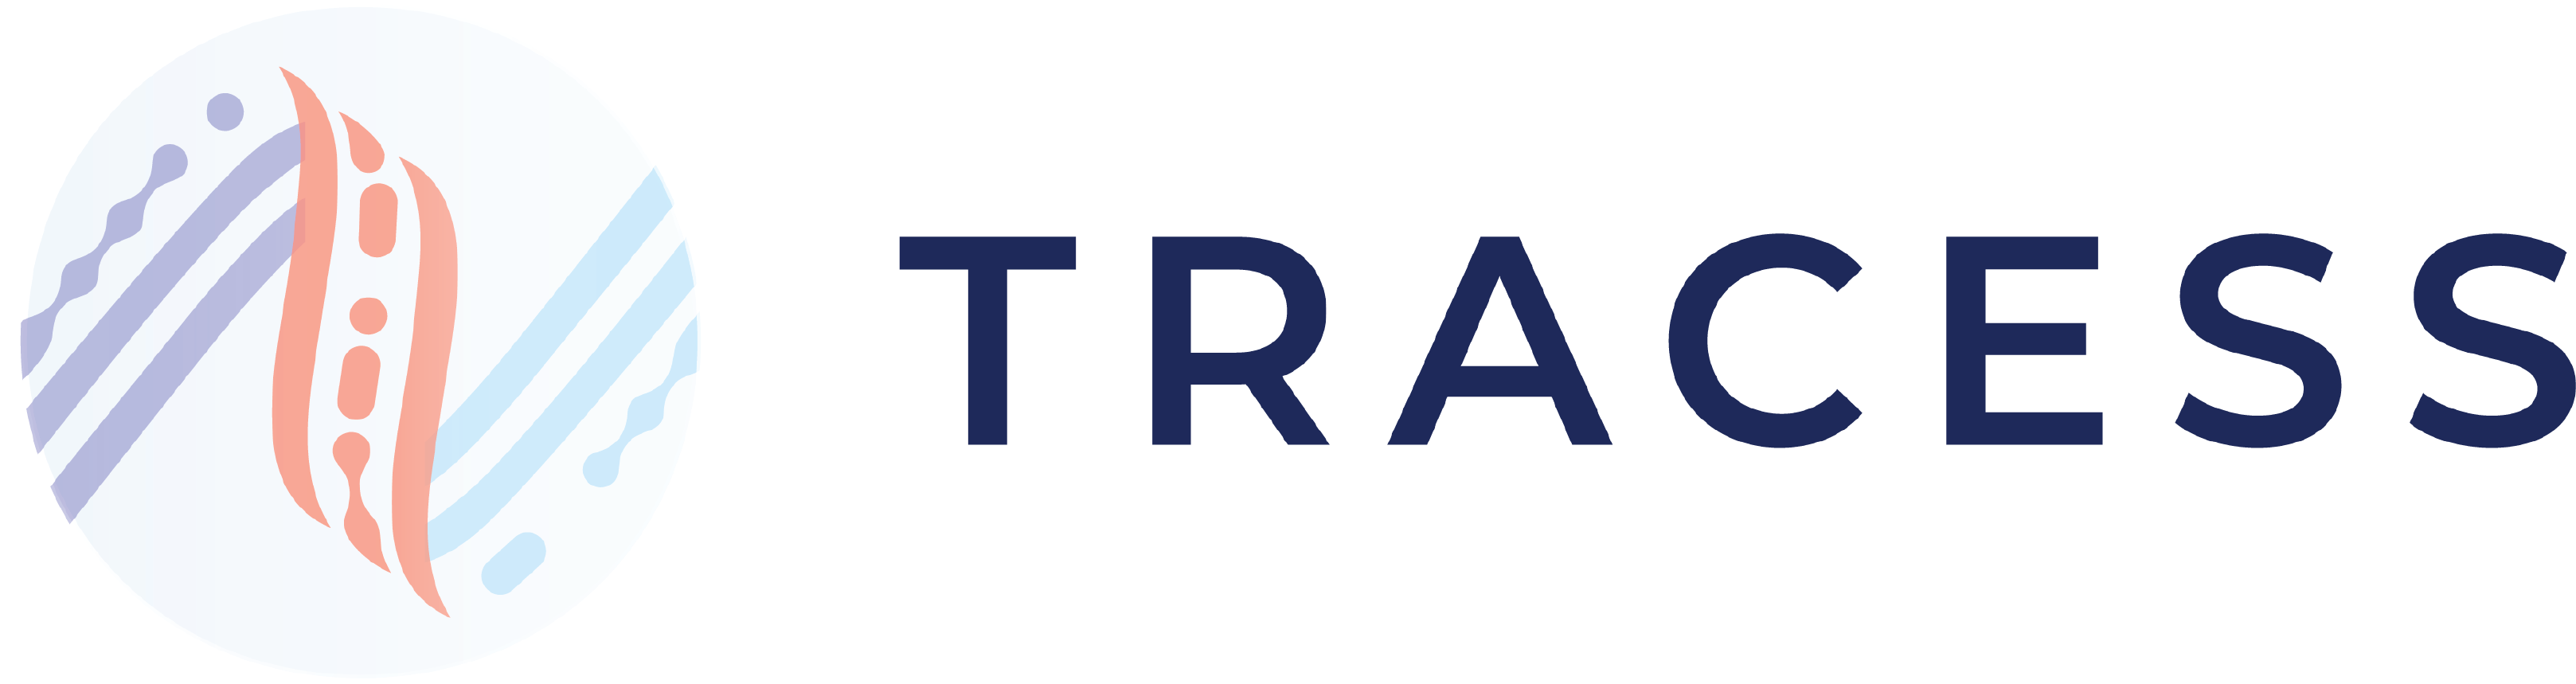 tracess-logo2